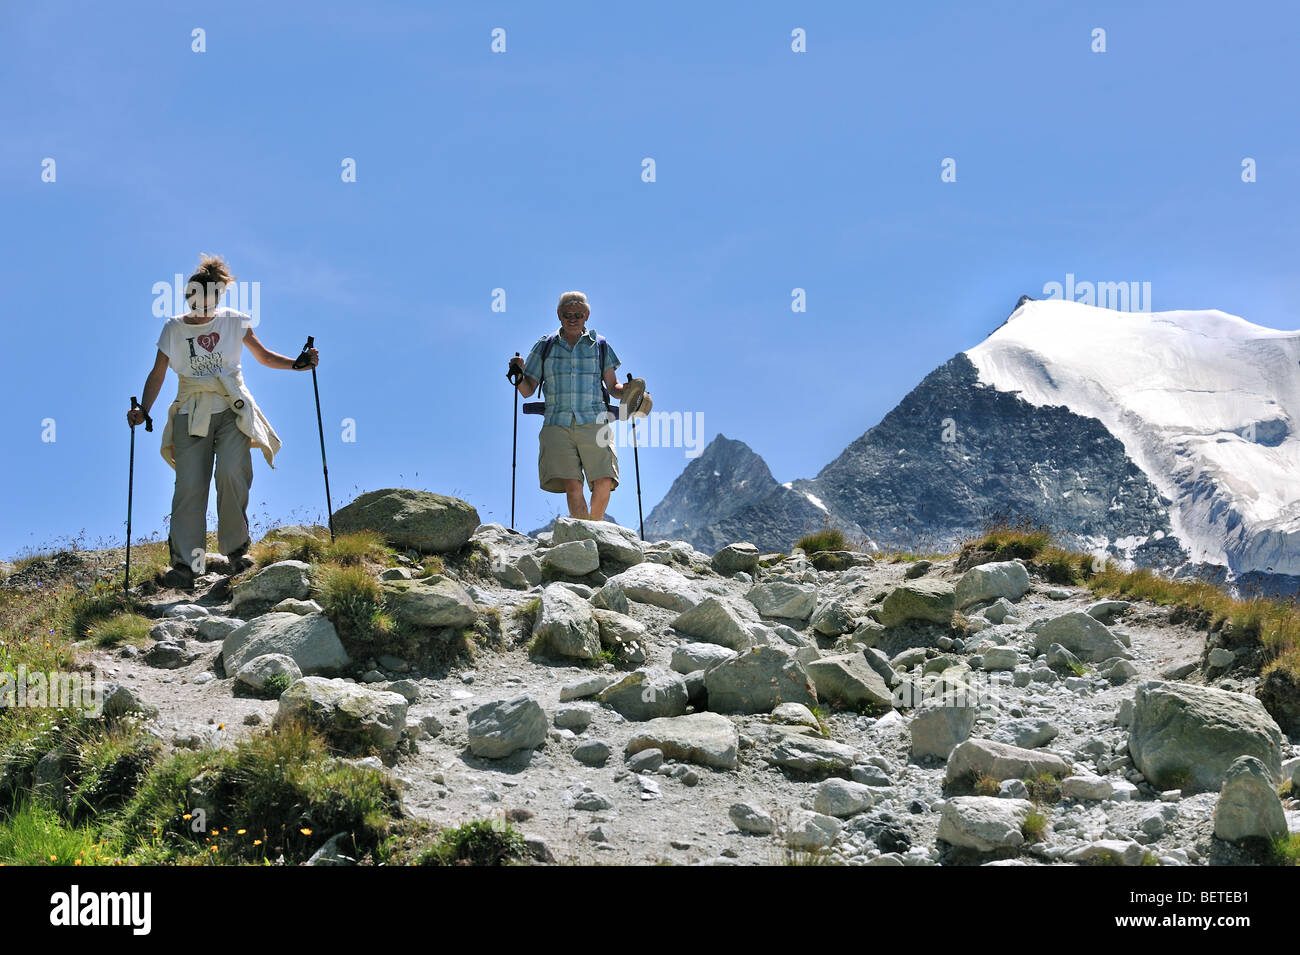 Deux touristes / marcheurs marcher le long du chemin de montagne dans les Alpes Valaisannes Suisse / Walliser Alpen, Valais / Wallis (Suisse) Banque D'Images